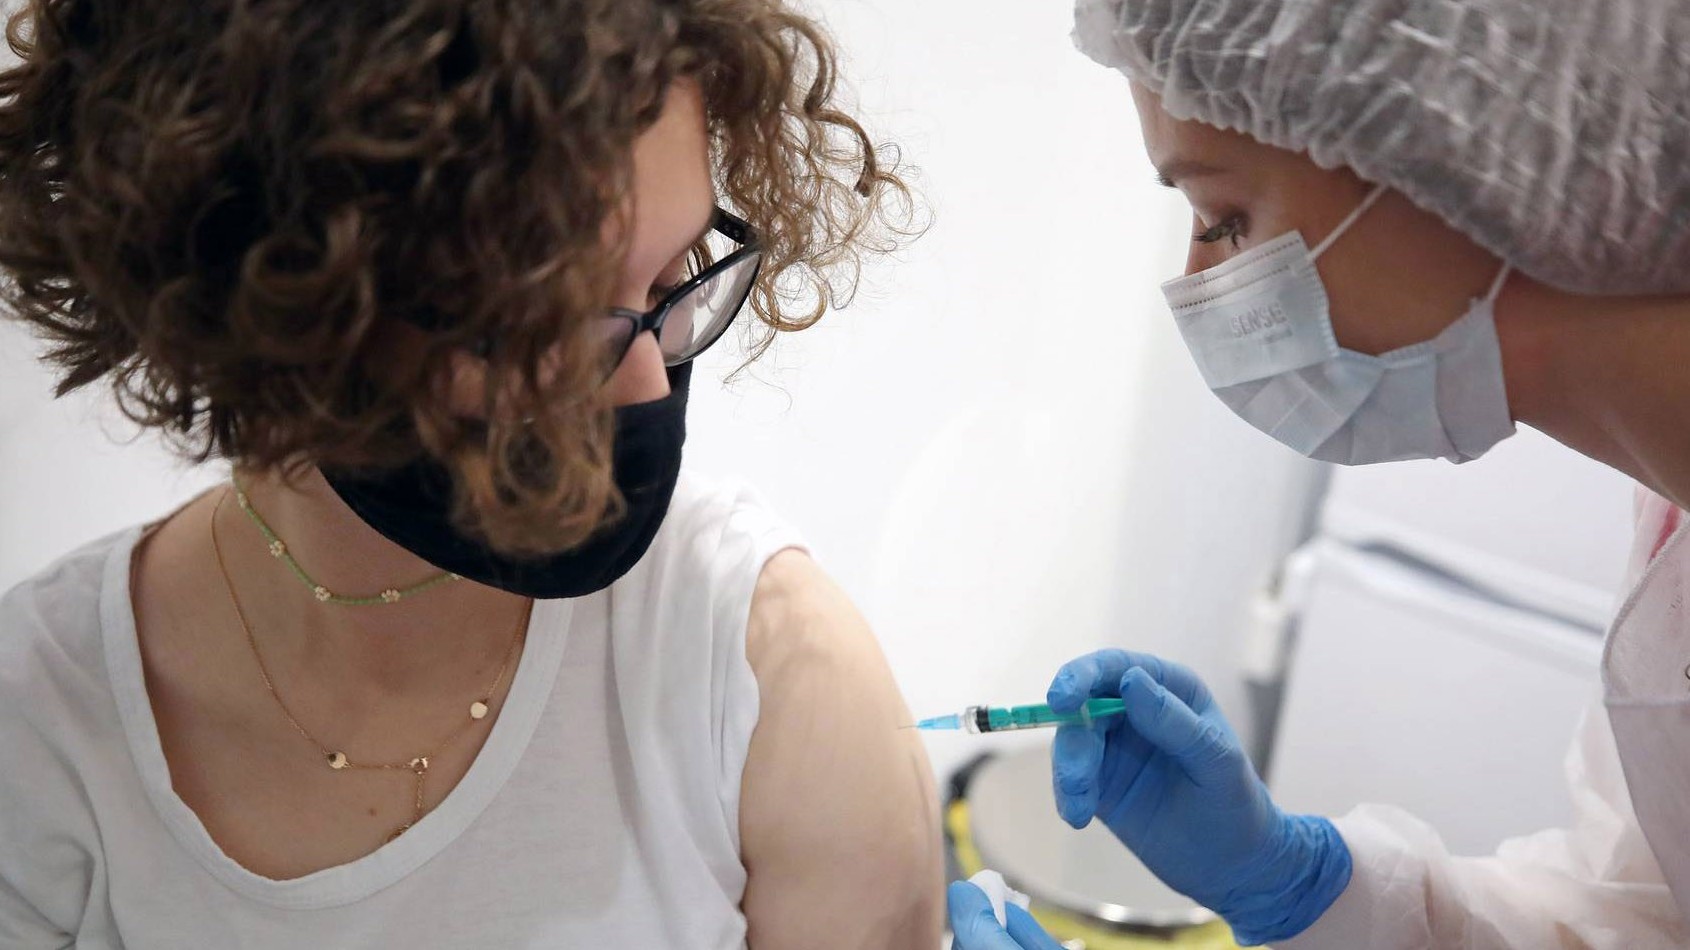 Nga cho phép tiêm đồng thời vaccine phòng Covid-19 và cúm